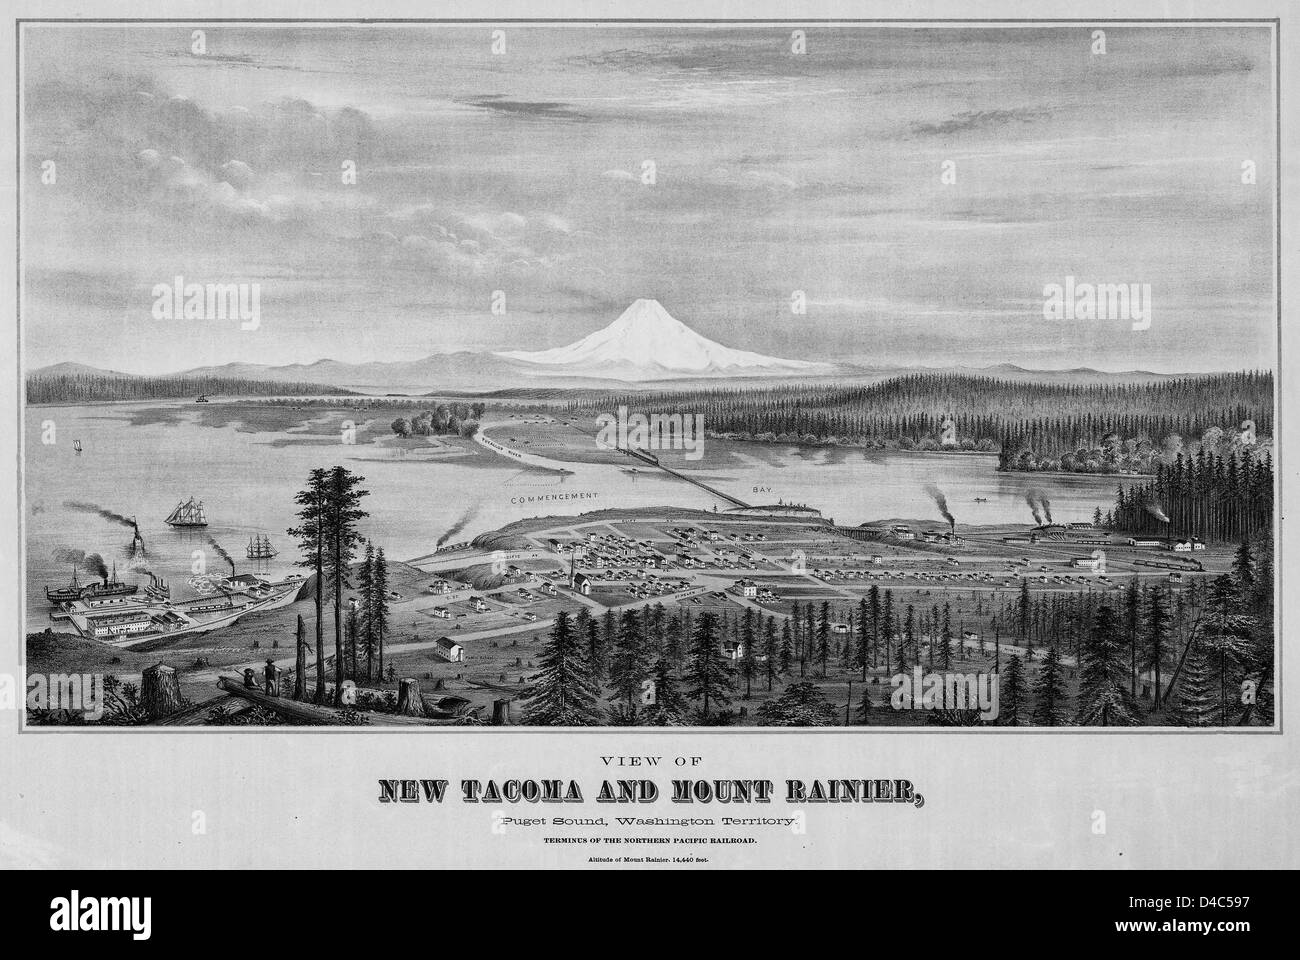 Kartenansicht der neuen Tacoma und Mount Rainier, Puget Sound, Washington-Territorium, ca. 1878 Stockfoto